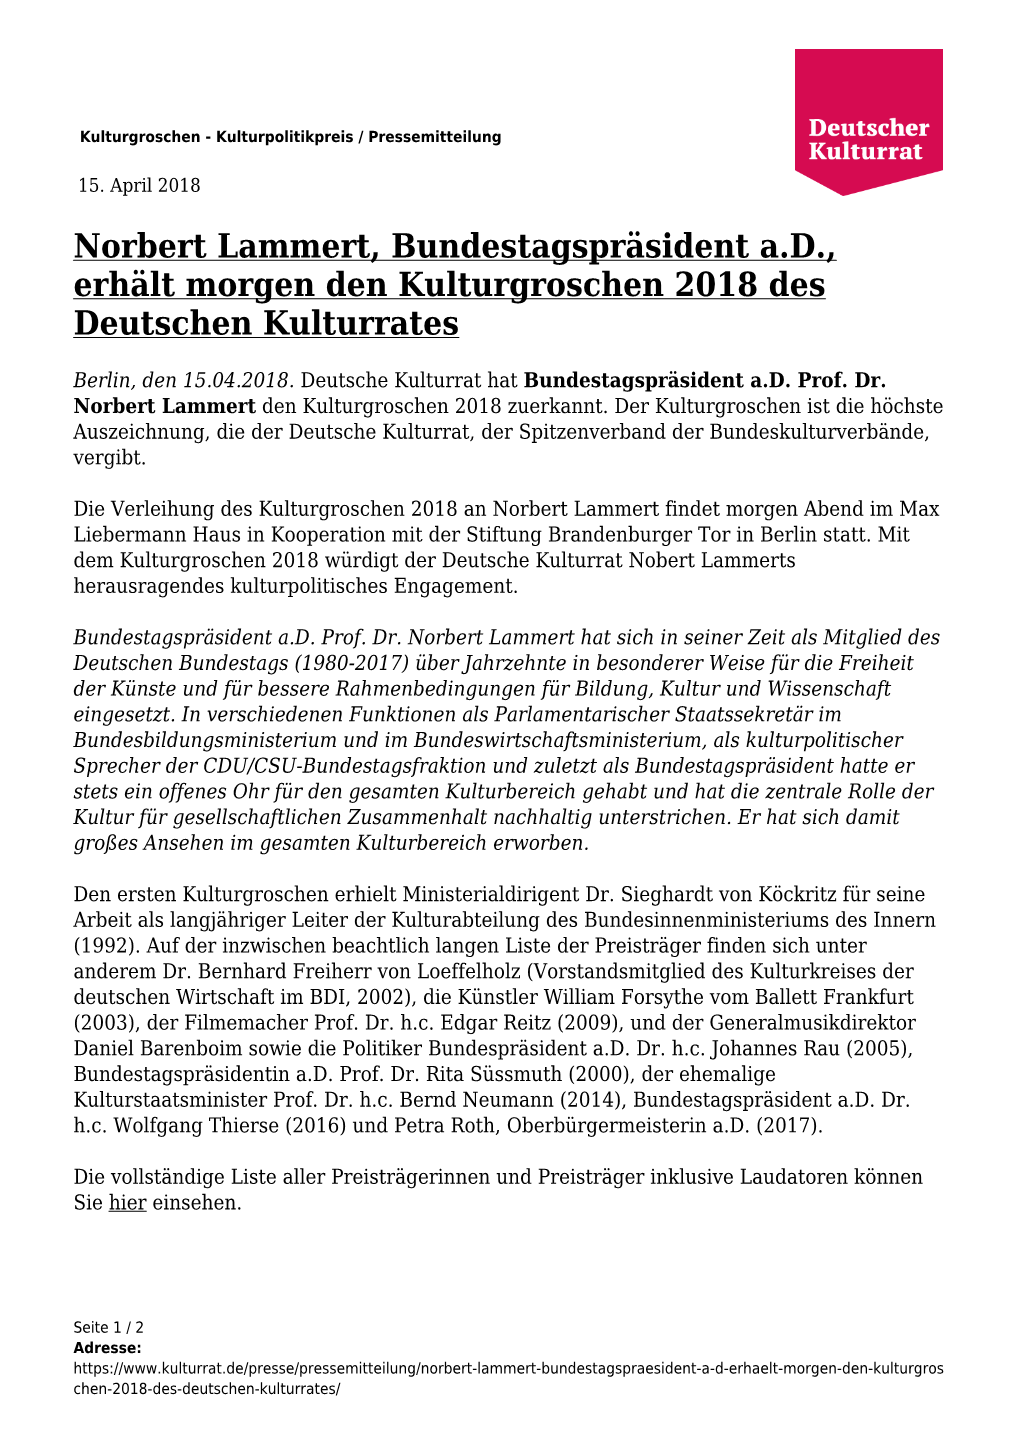 Norbert Lammert, Bundestagspräsident A.D., Erhält Morgen Den Kulturgroschen 2018 Des Deutschen Kulturrates